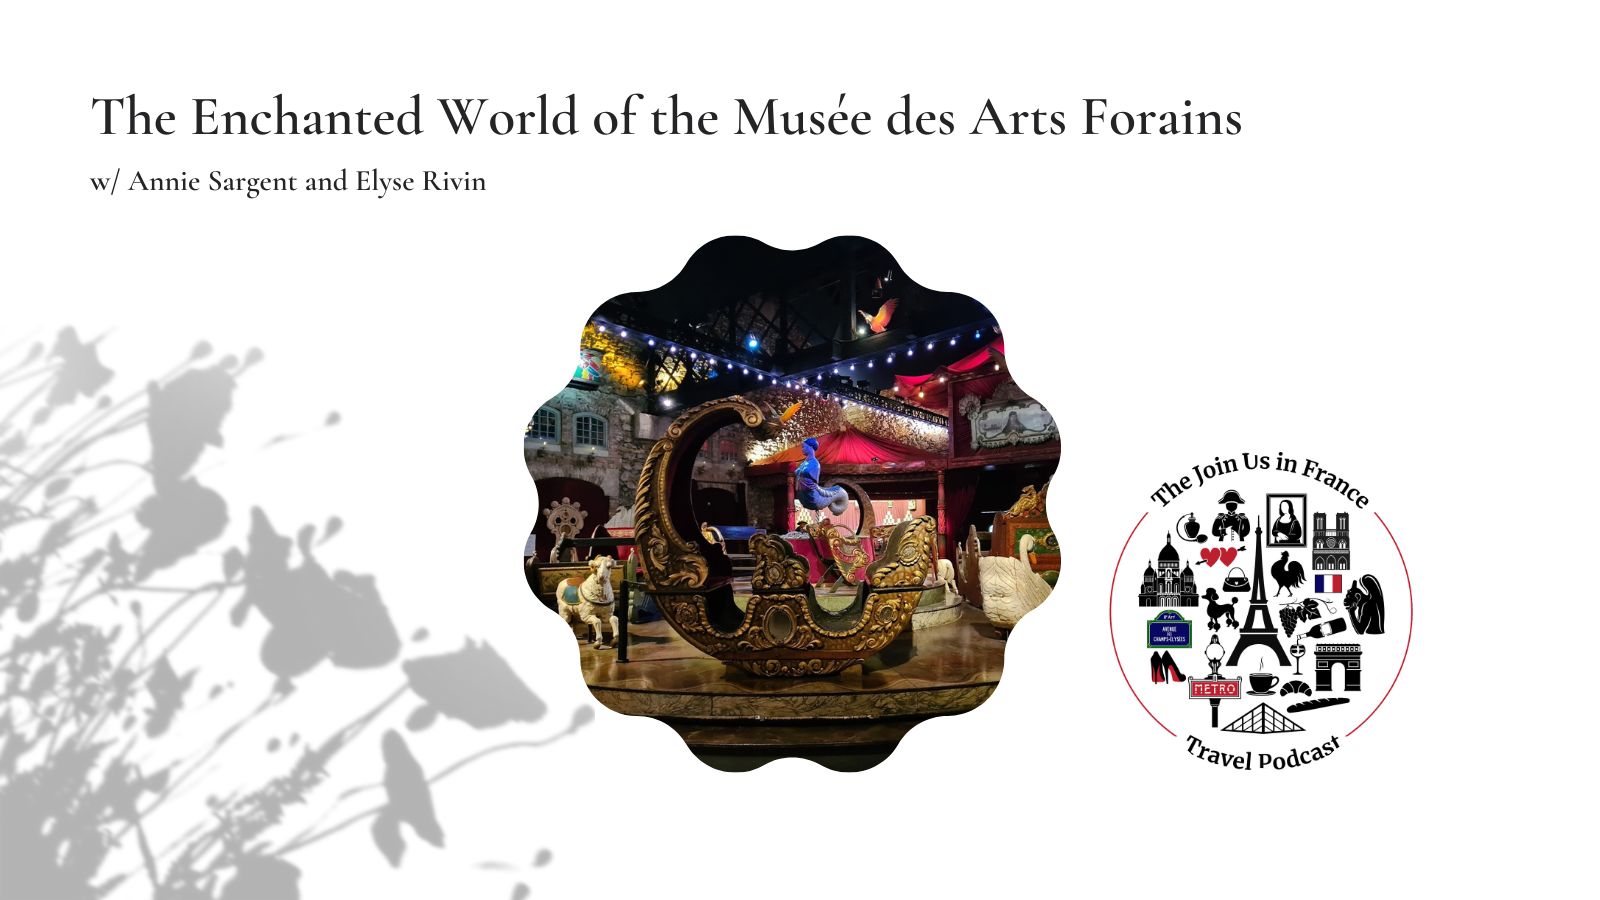 Musée des Arts Forains in Paris Episode